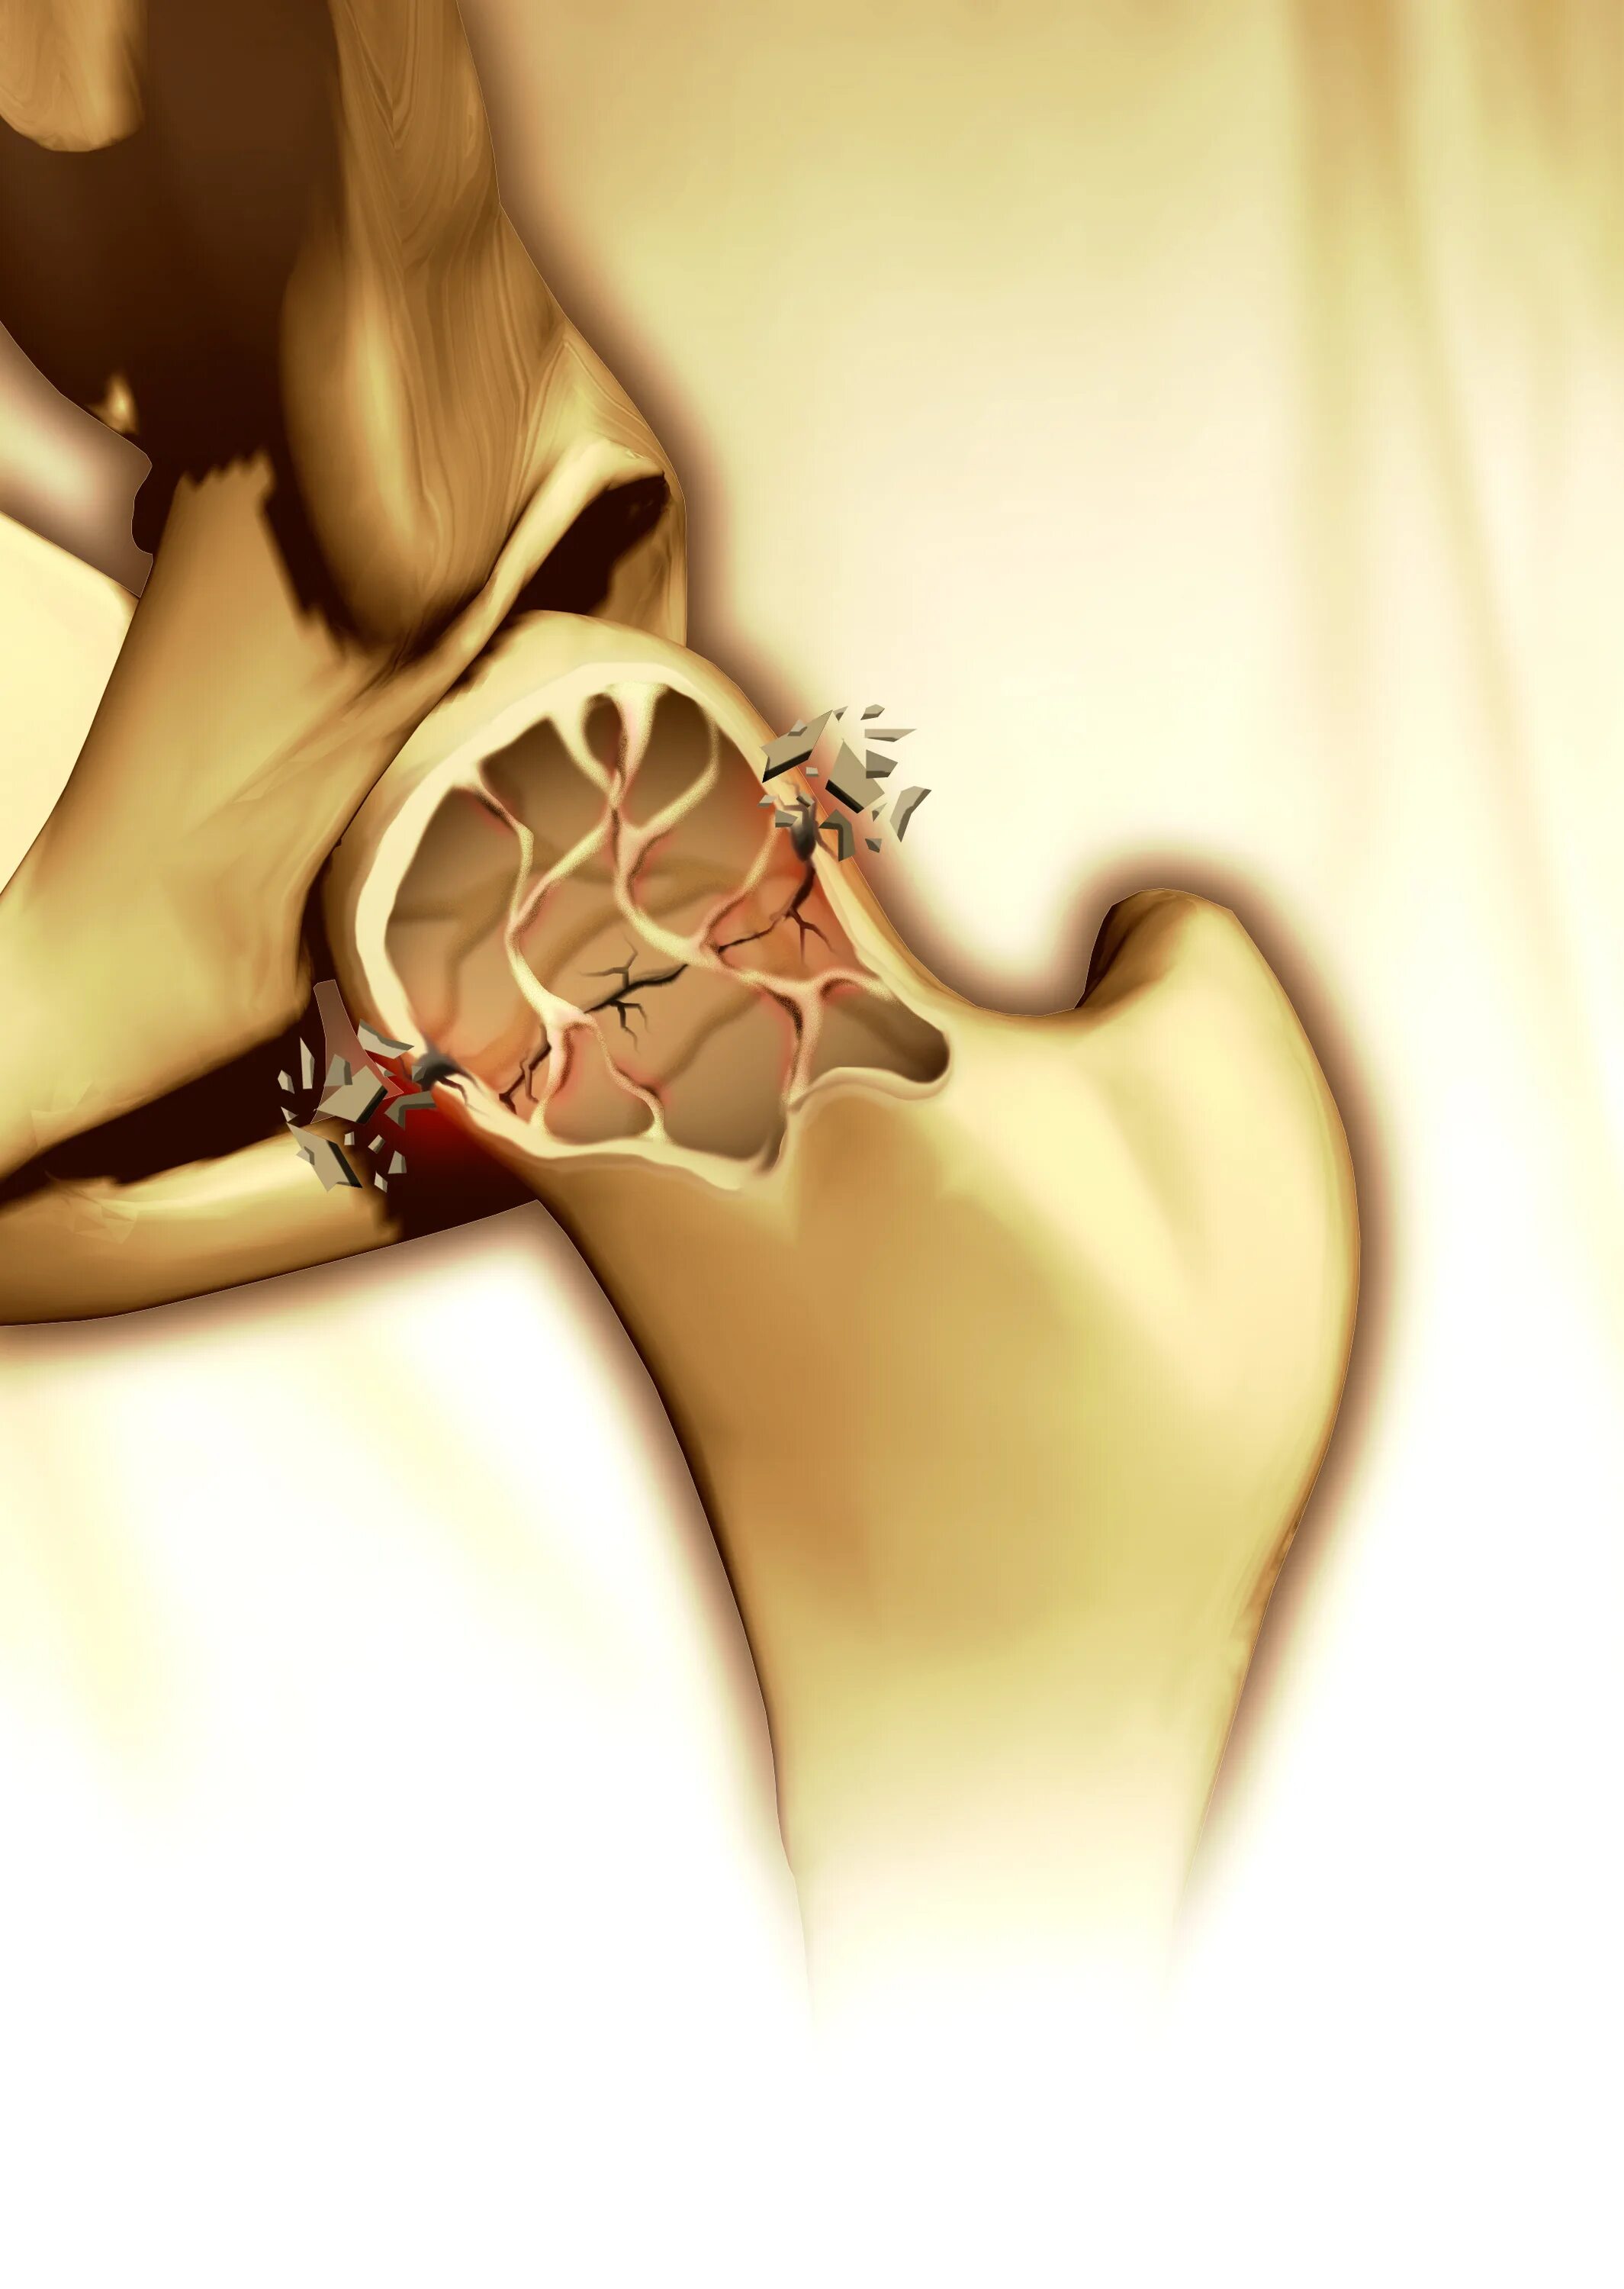 Разбивание костей. Остеопороз. Плотные кости. Fracture risk при остеопорозе.